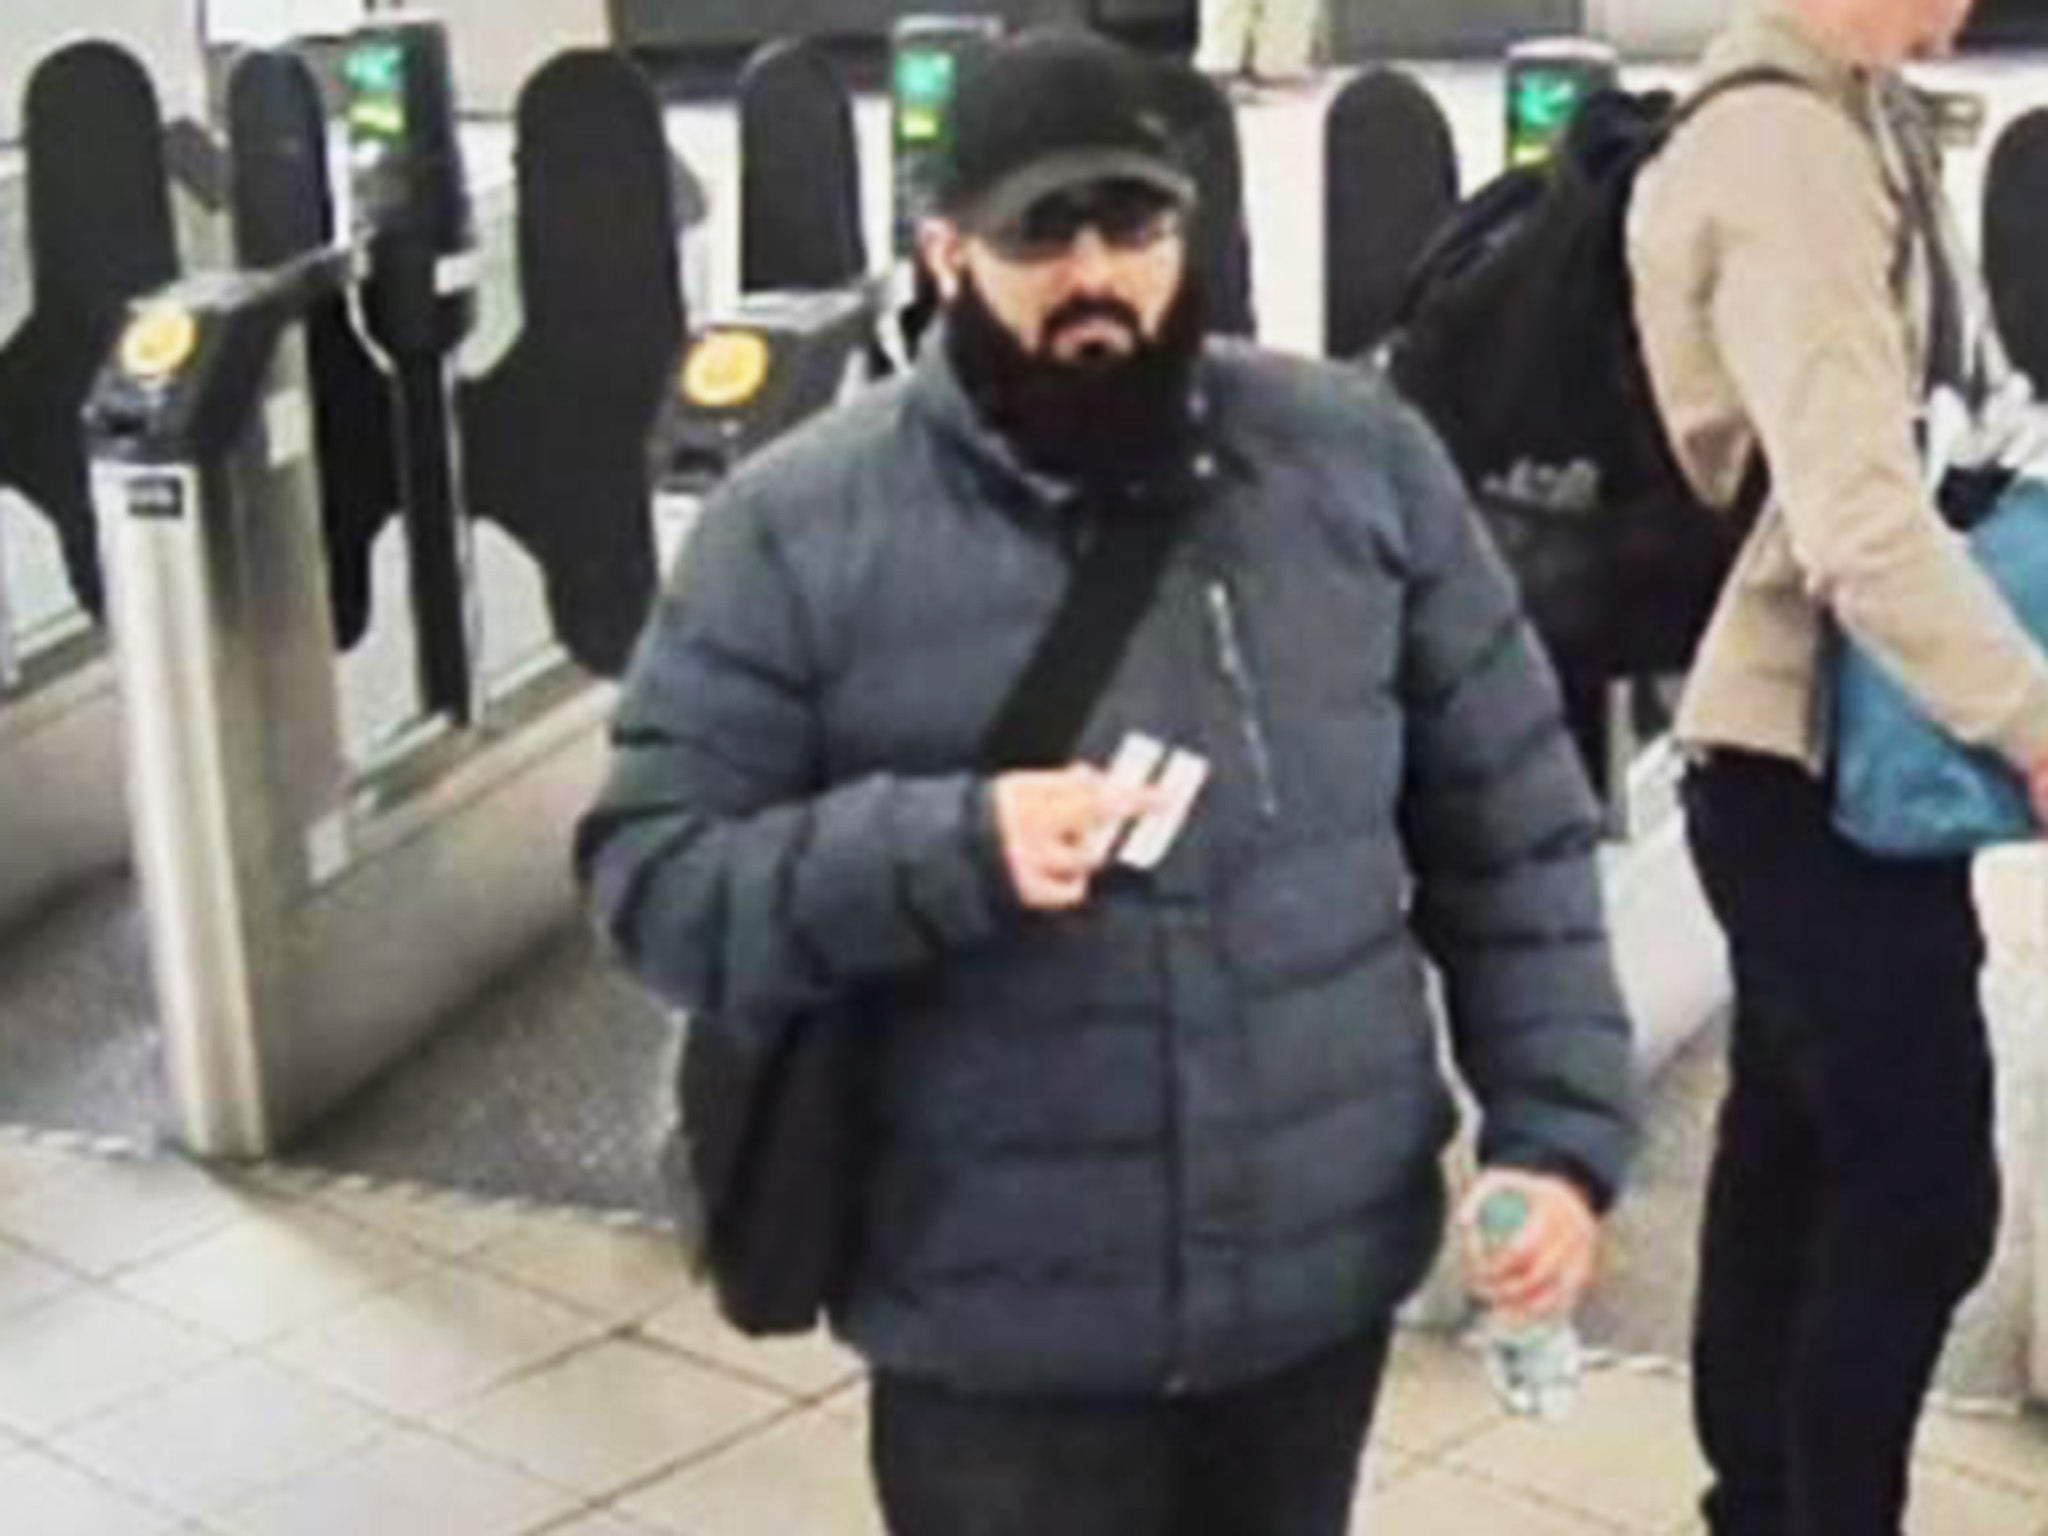 A CCTV image of Usman Khan travelling to Fishmongers’ Hall on 29 November 2019